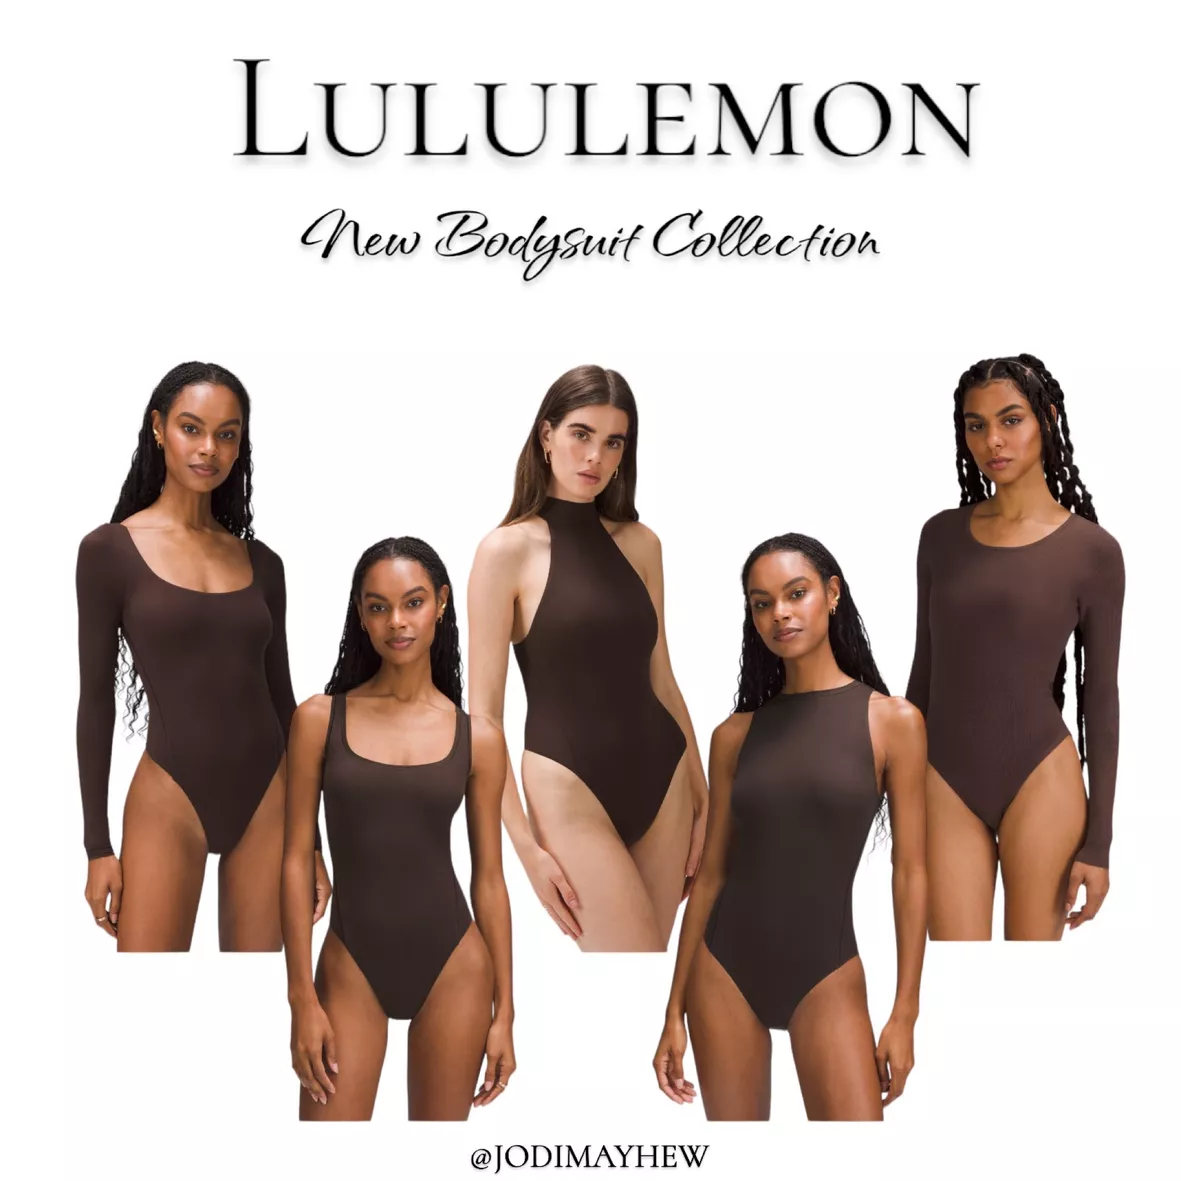 1:1 LULU LEMON Dupe Shorts … curated on LTK